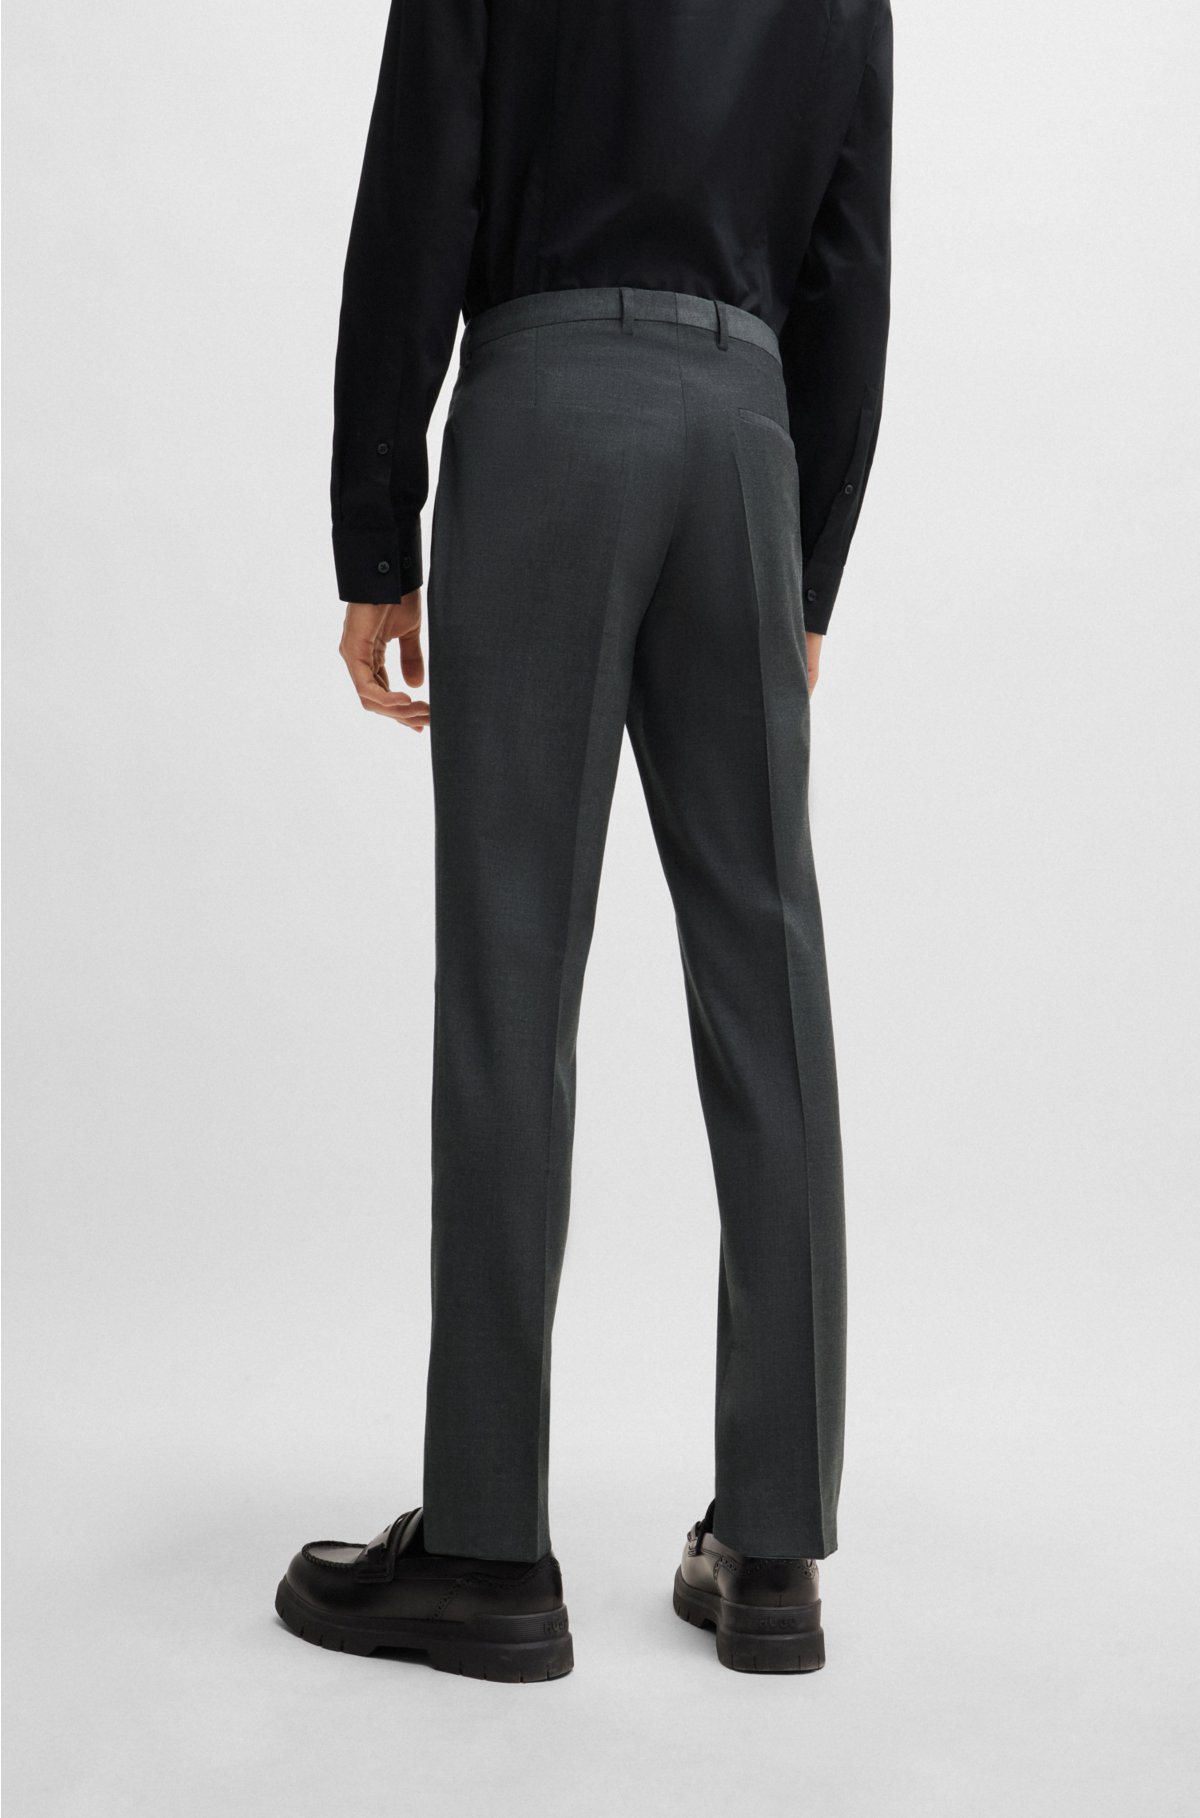 Extra-slim-fit suit in a wool blend, Dark Grey